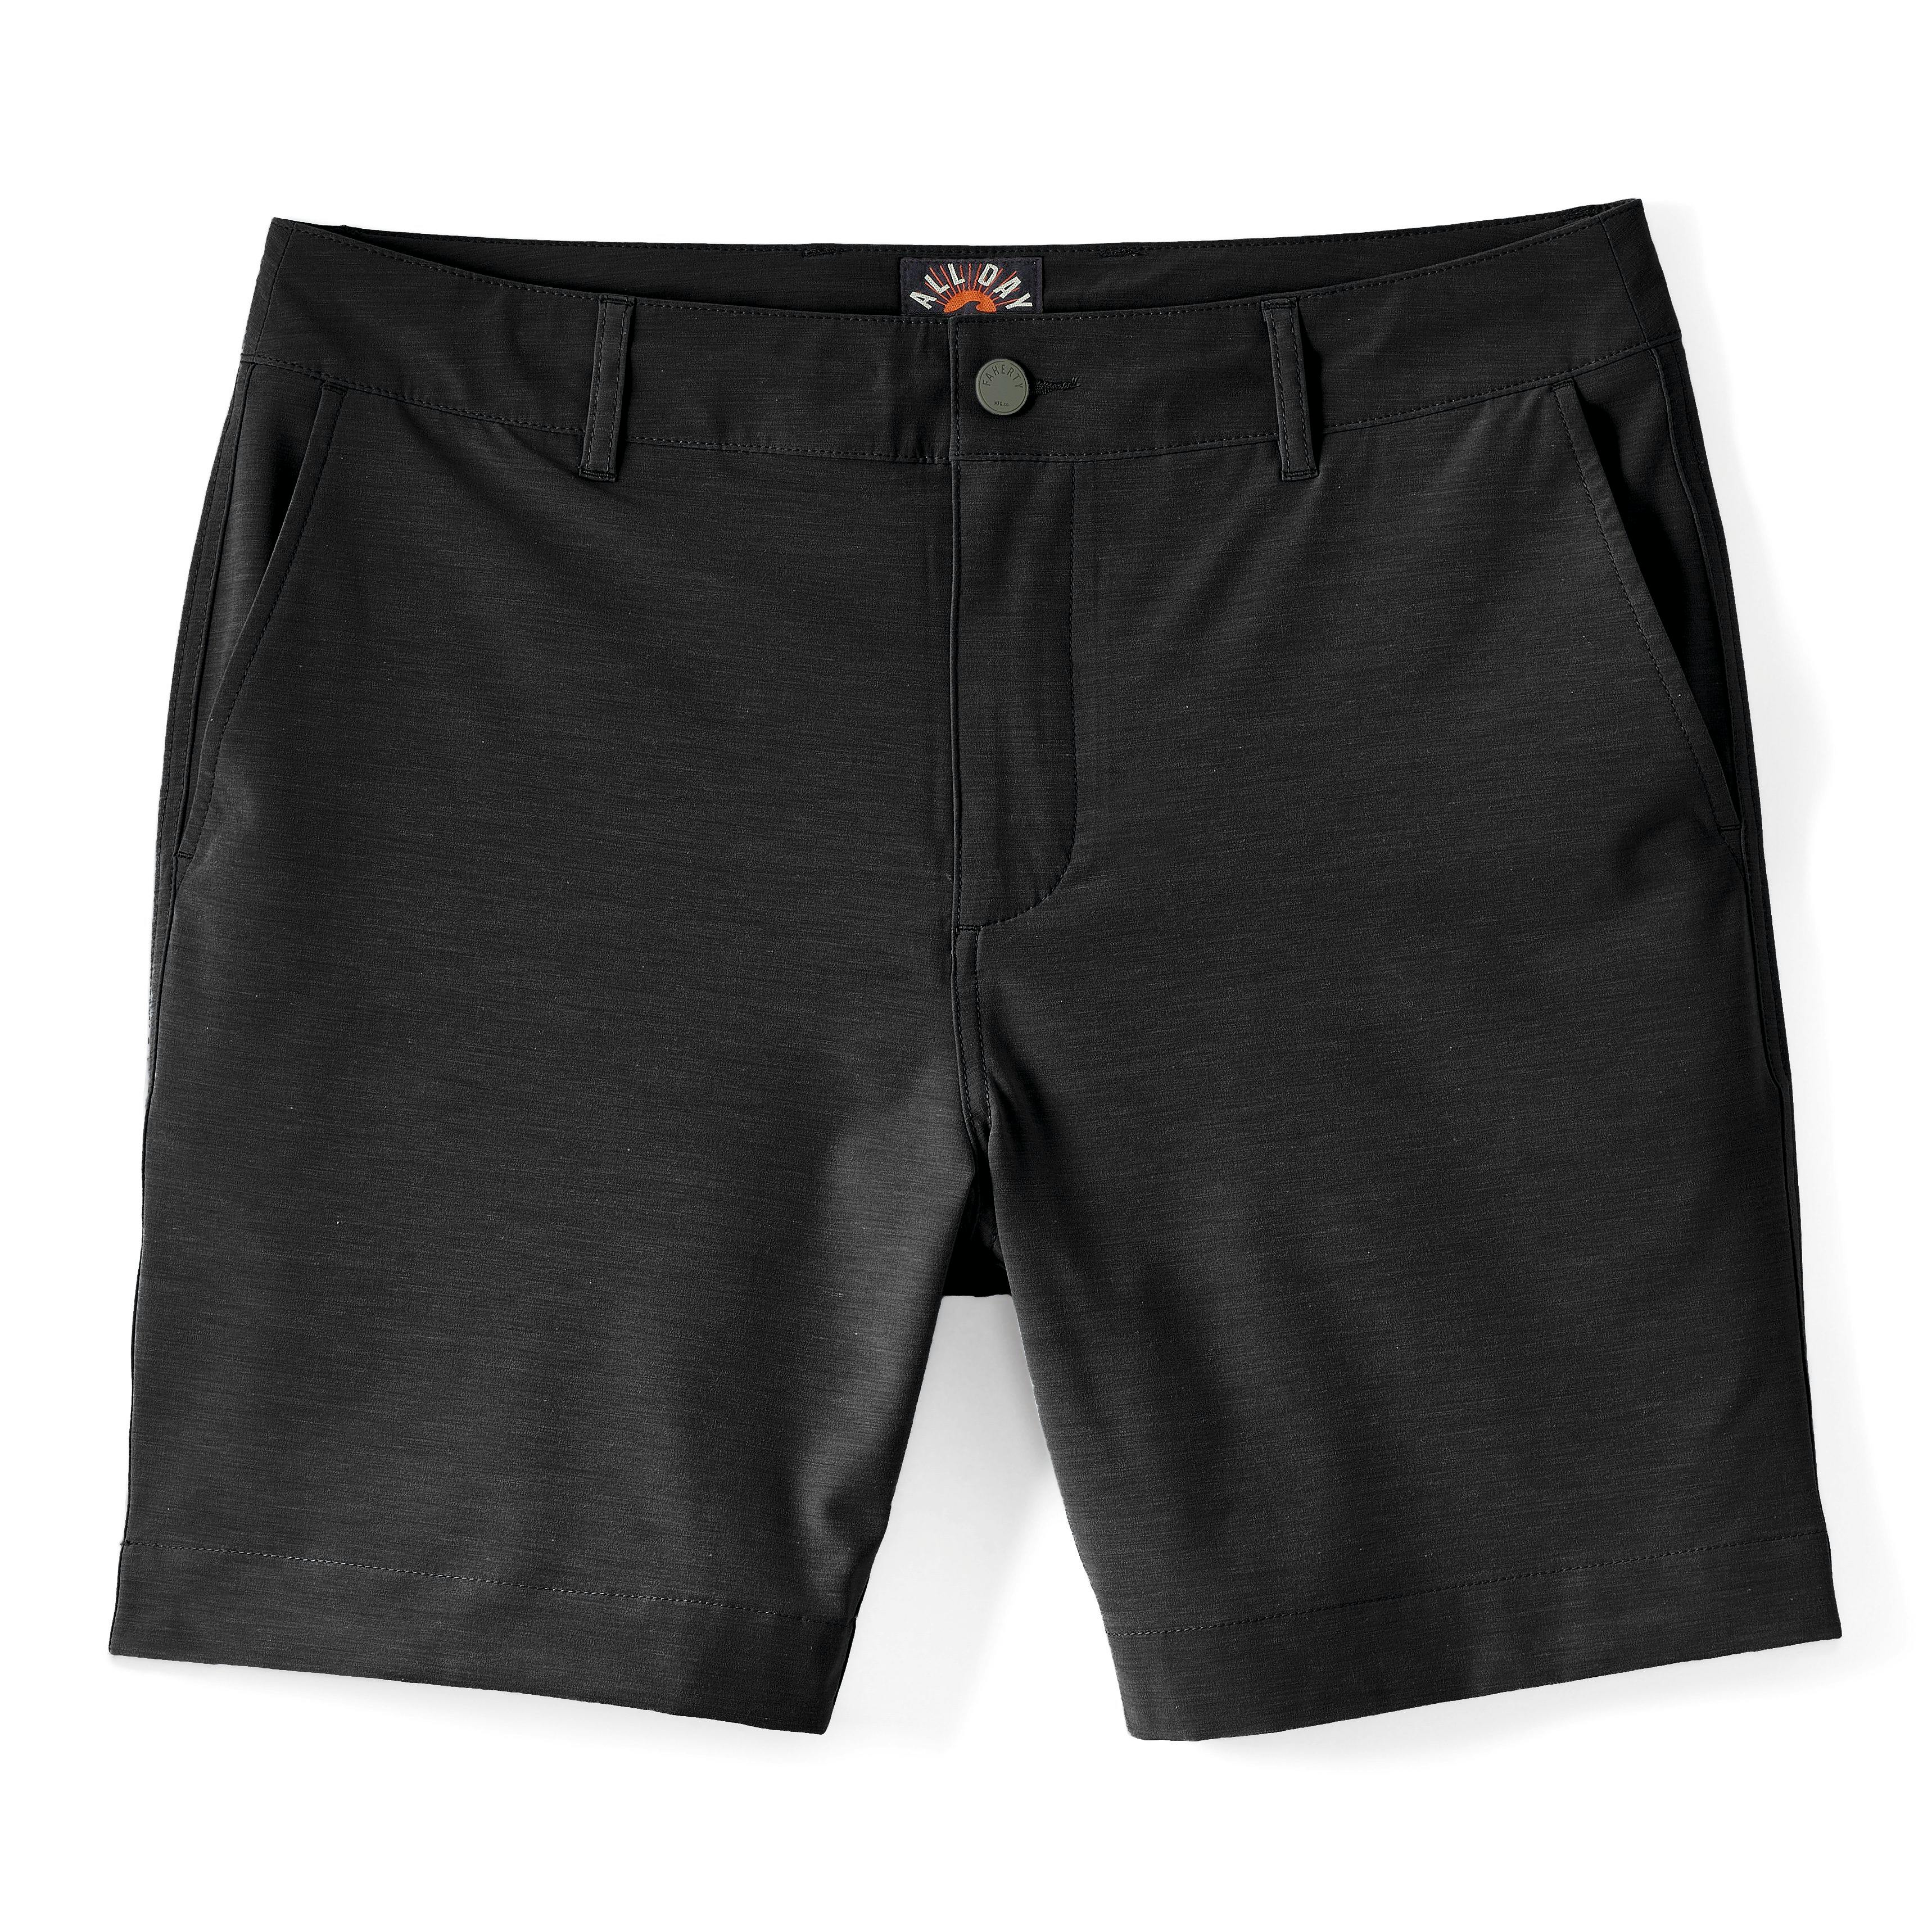 All Day Hybrid Shorts - 9"